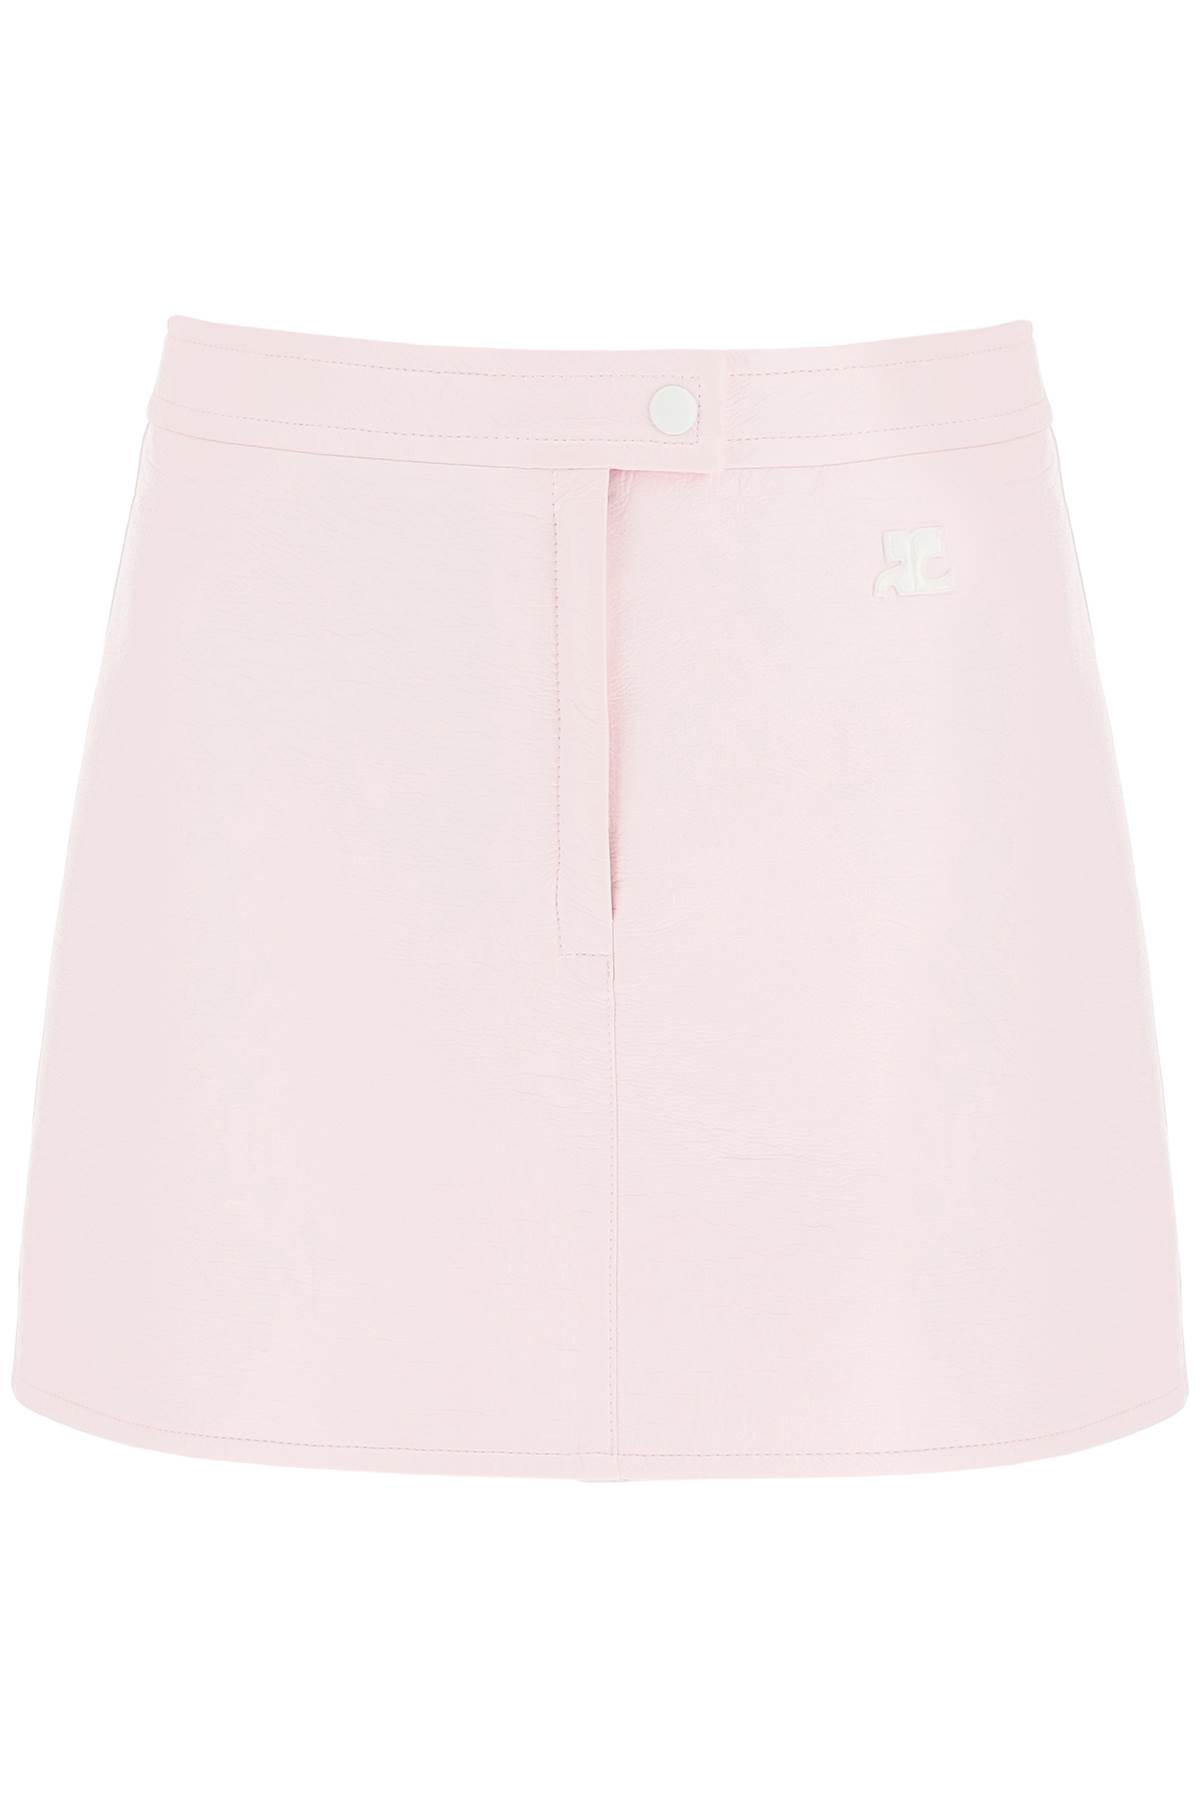 Courrèges Coated Cotton Mini Skirt